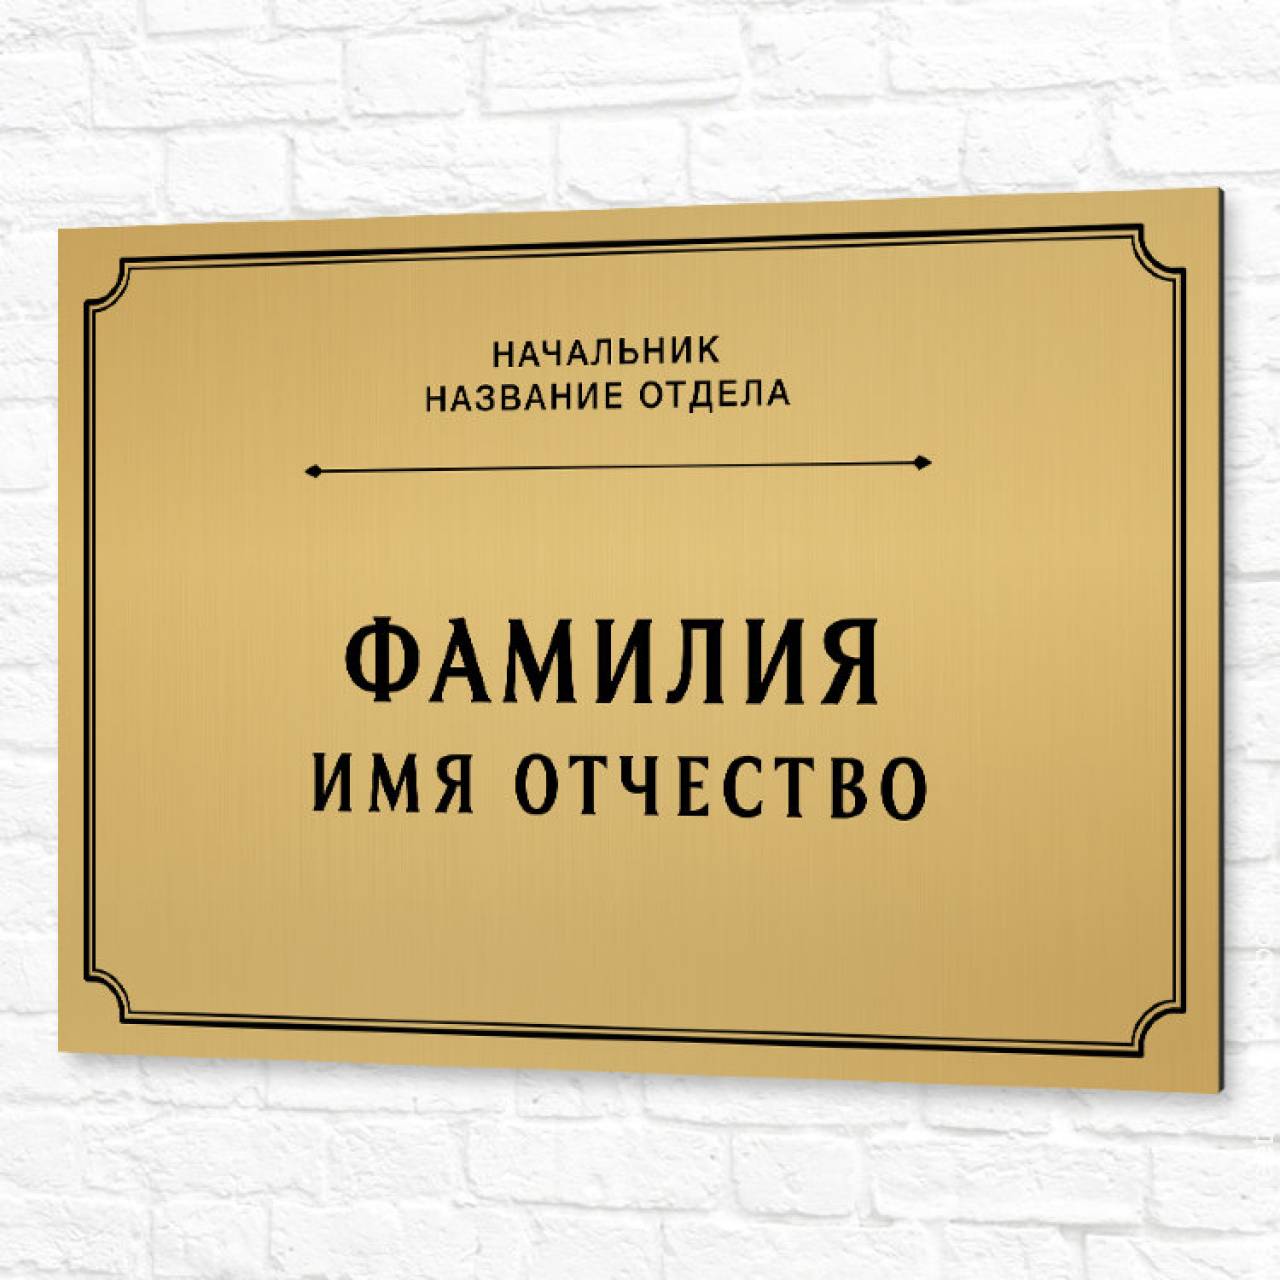 Под сотню позиций: вакансии начальников в Гродно с зарплатой до 5 500 рублей